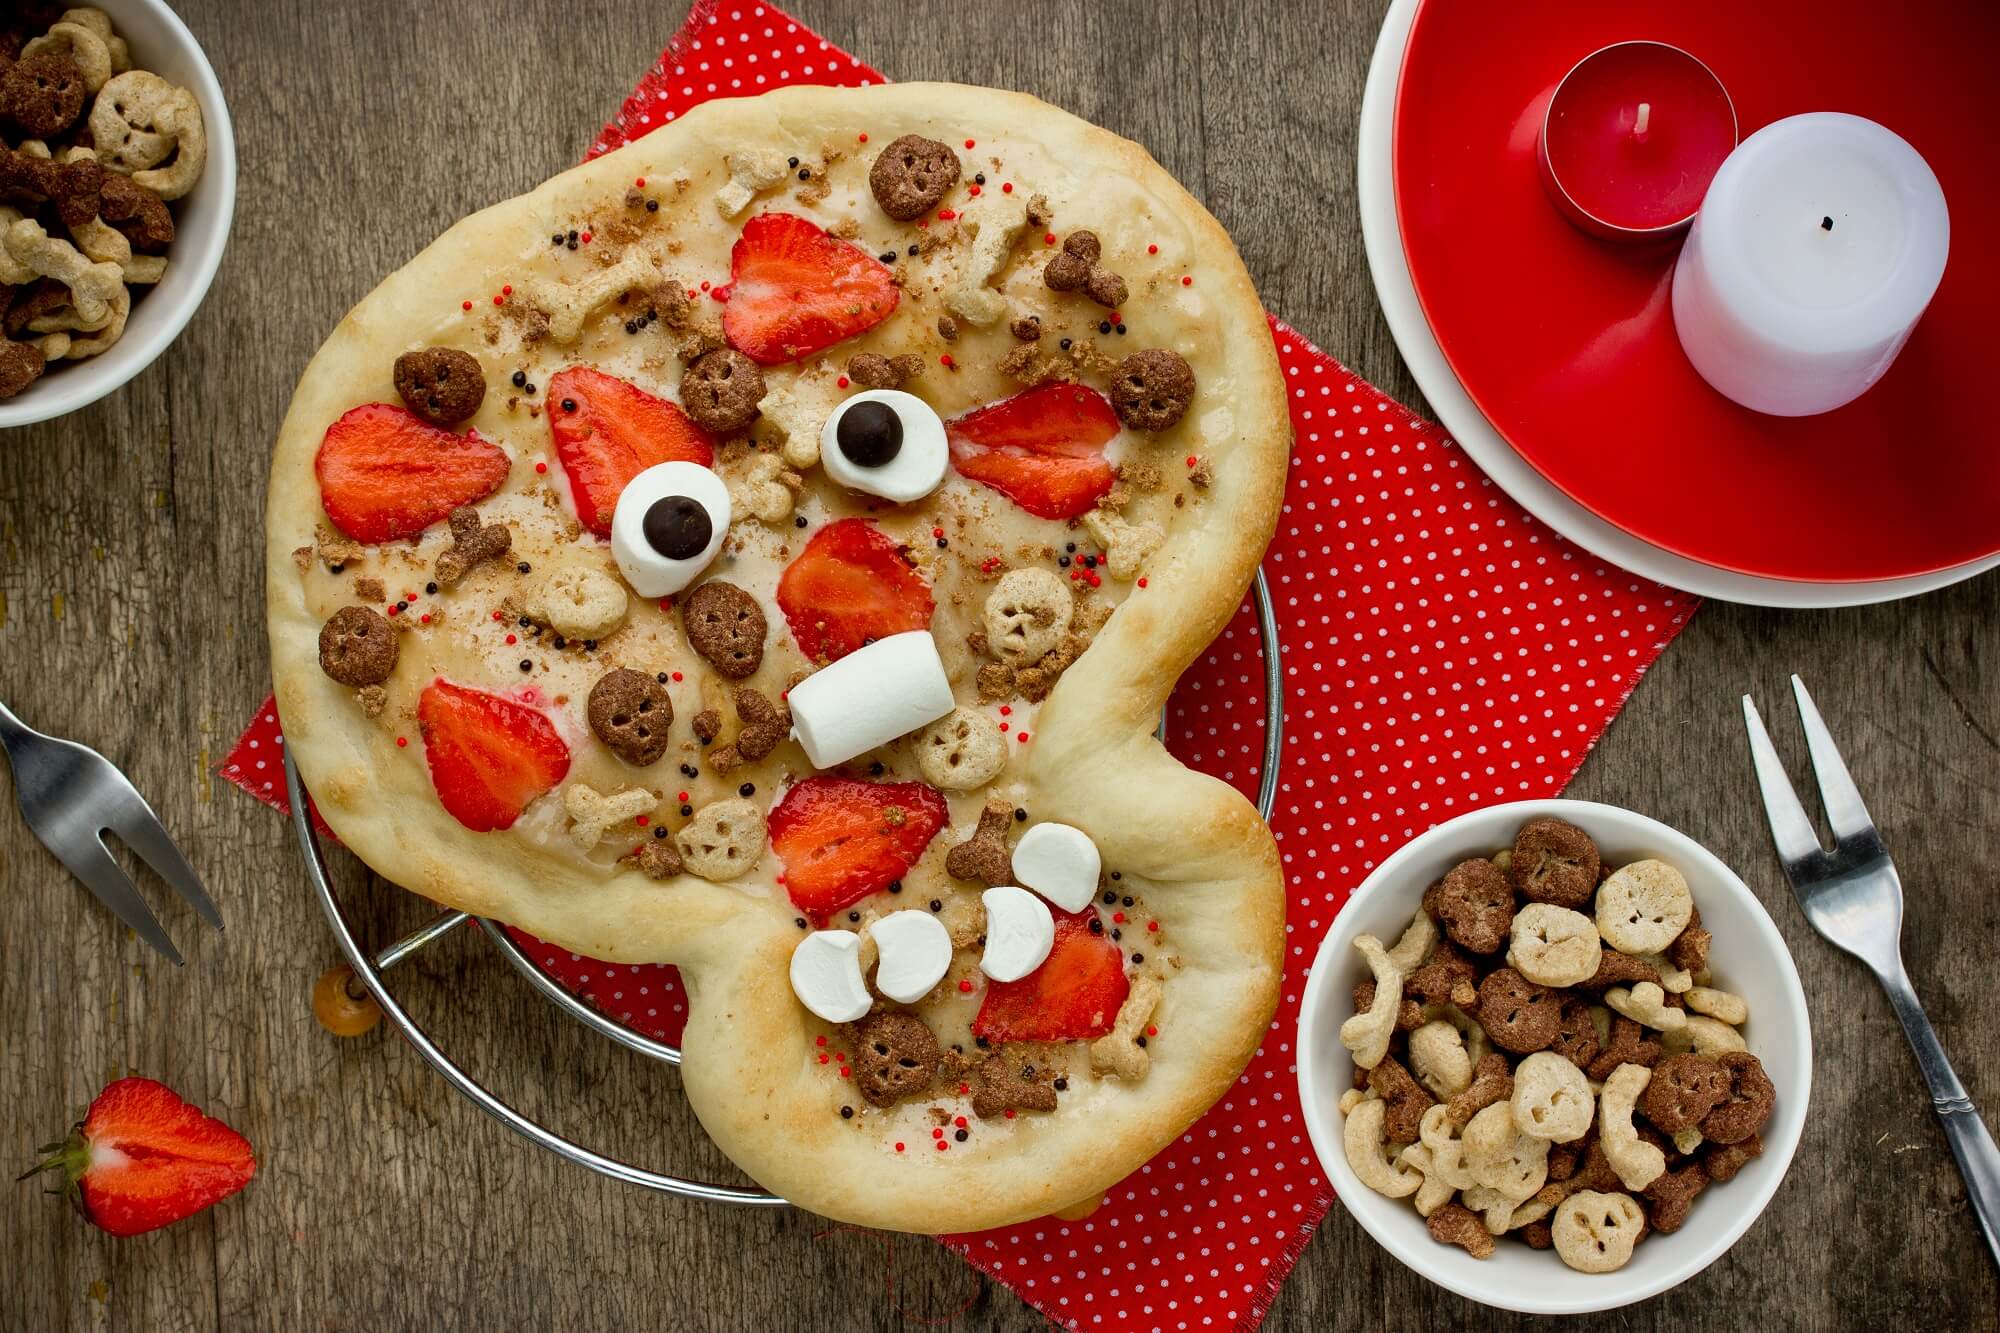 Skeleton Pizza Skull for Dessert - Halloween Pizza Food Ideas 